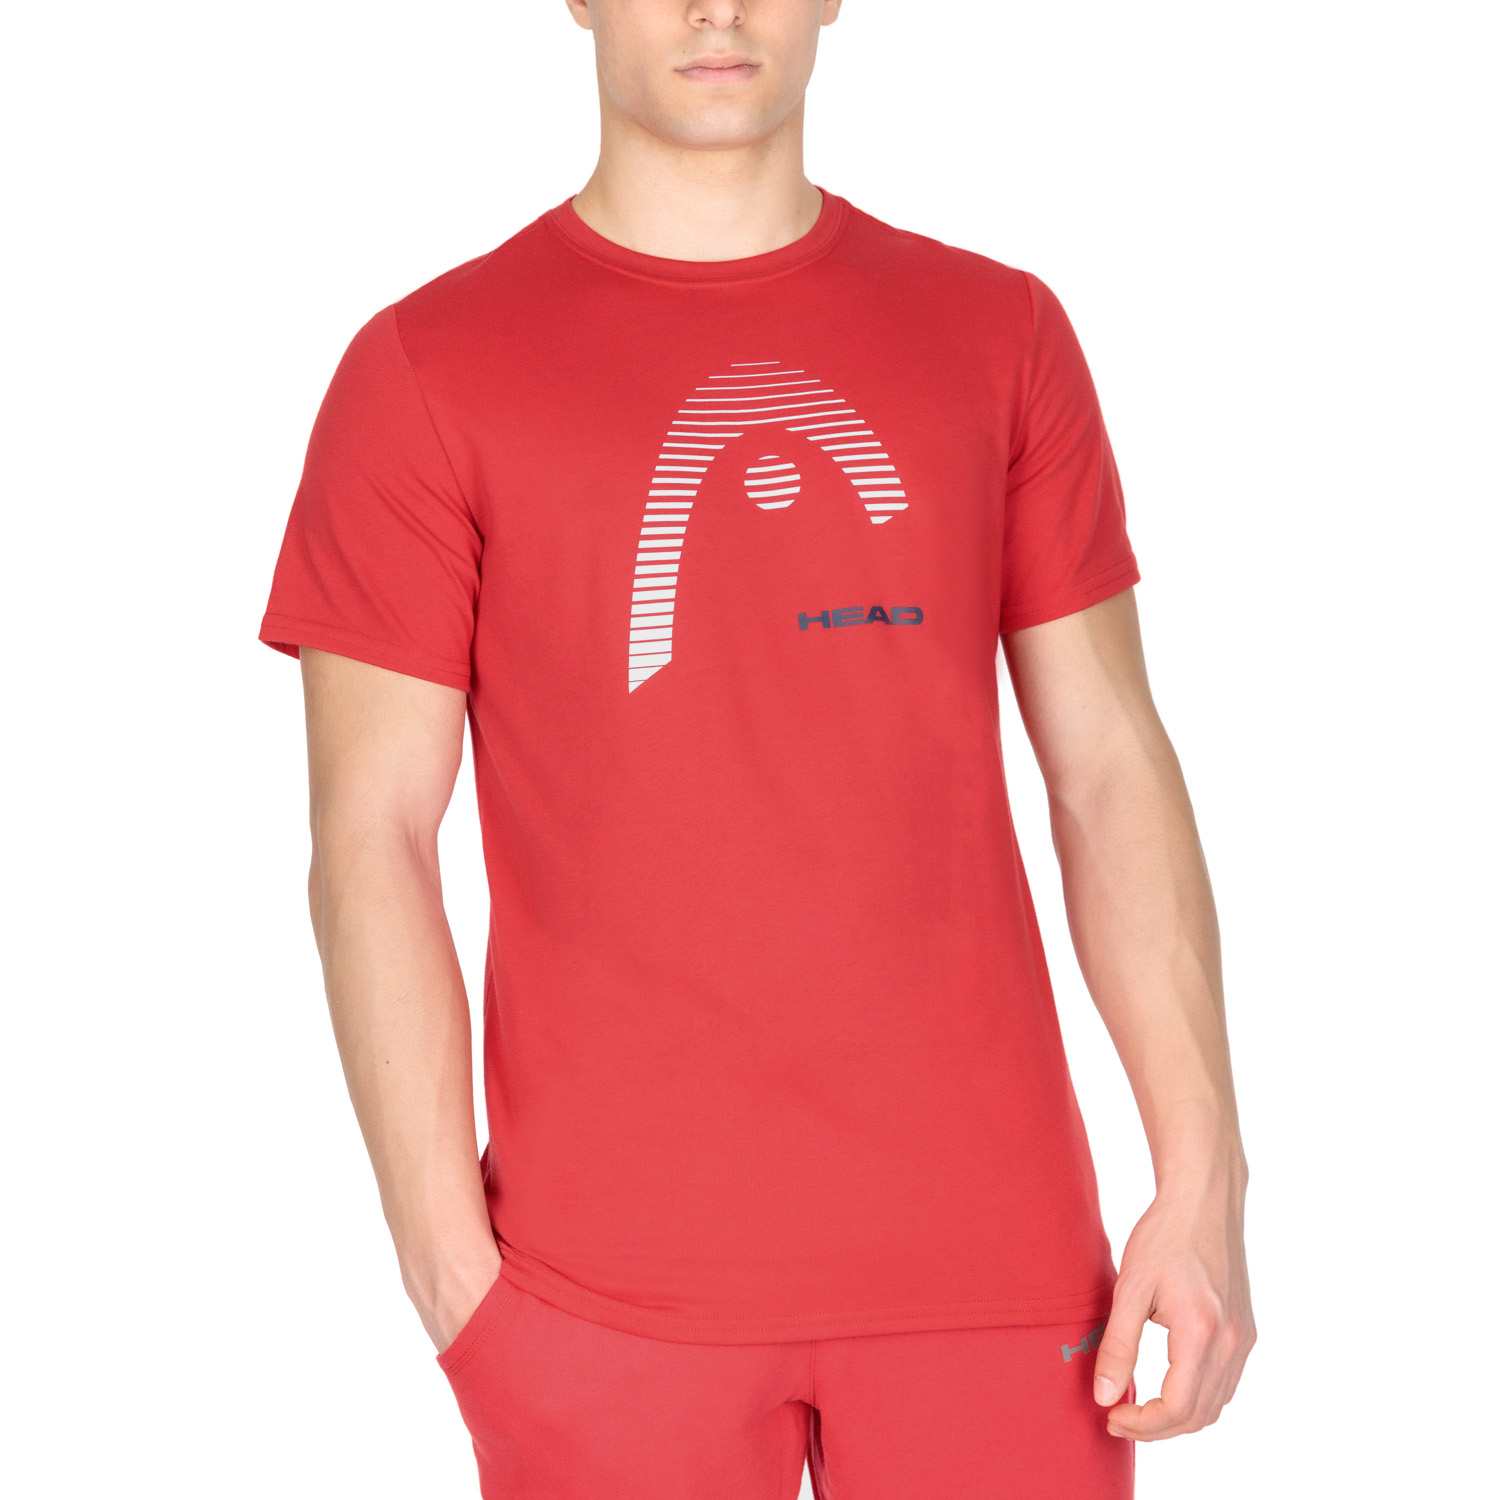 Head Club Carl T-Shirt - Red/White